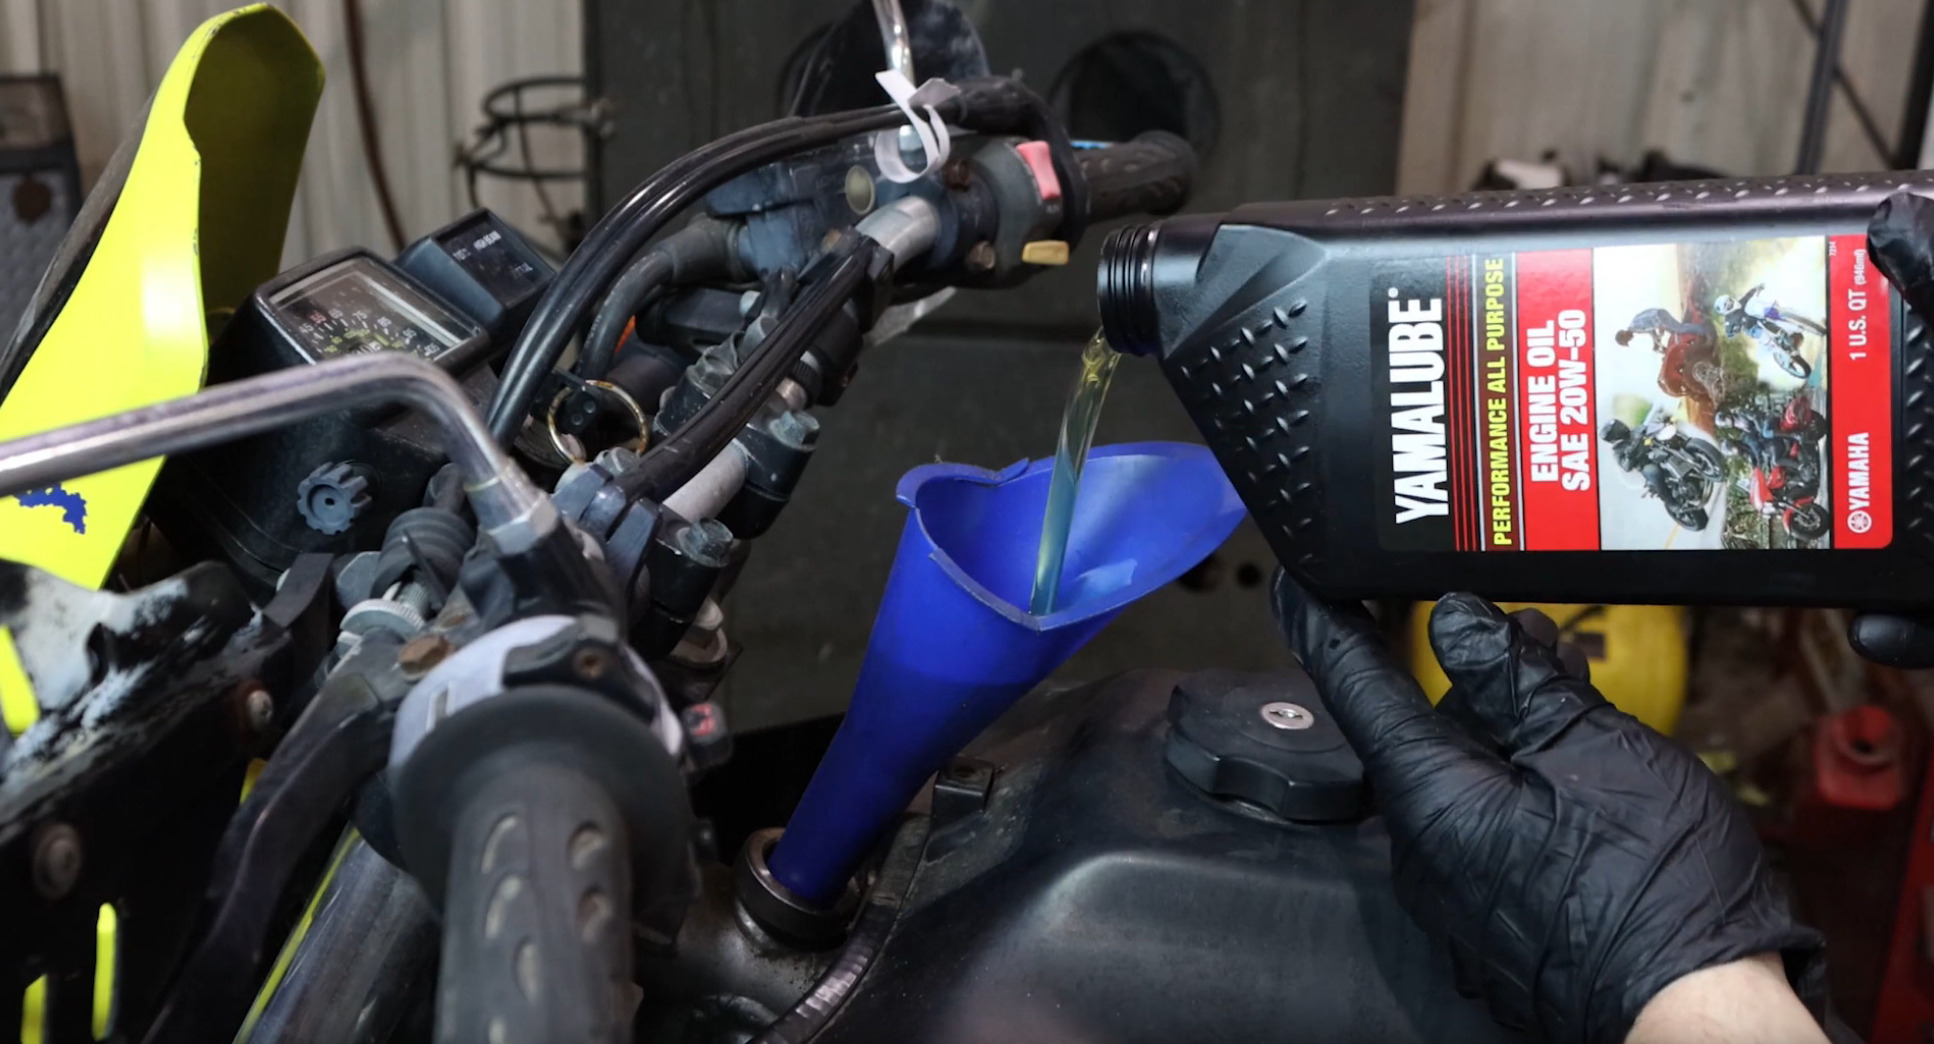 Yamaha motorcycle oil change